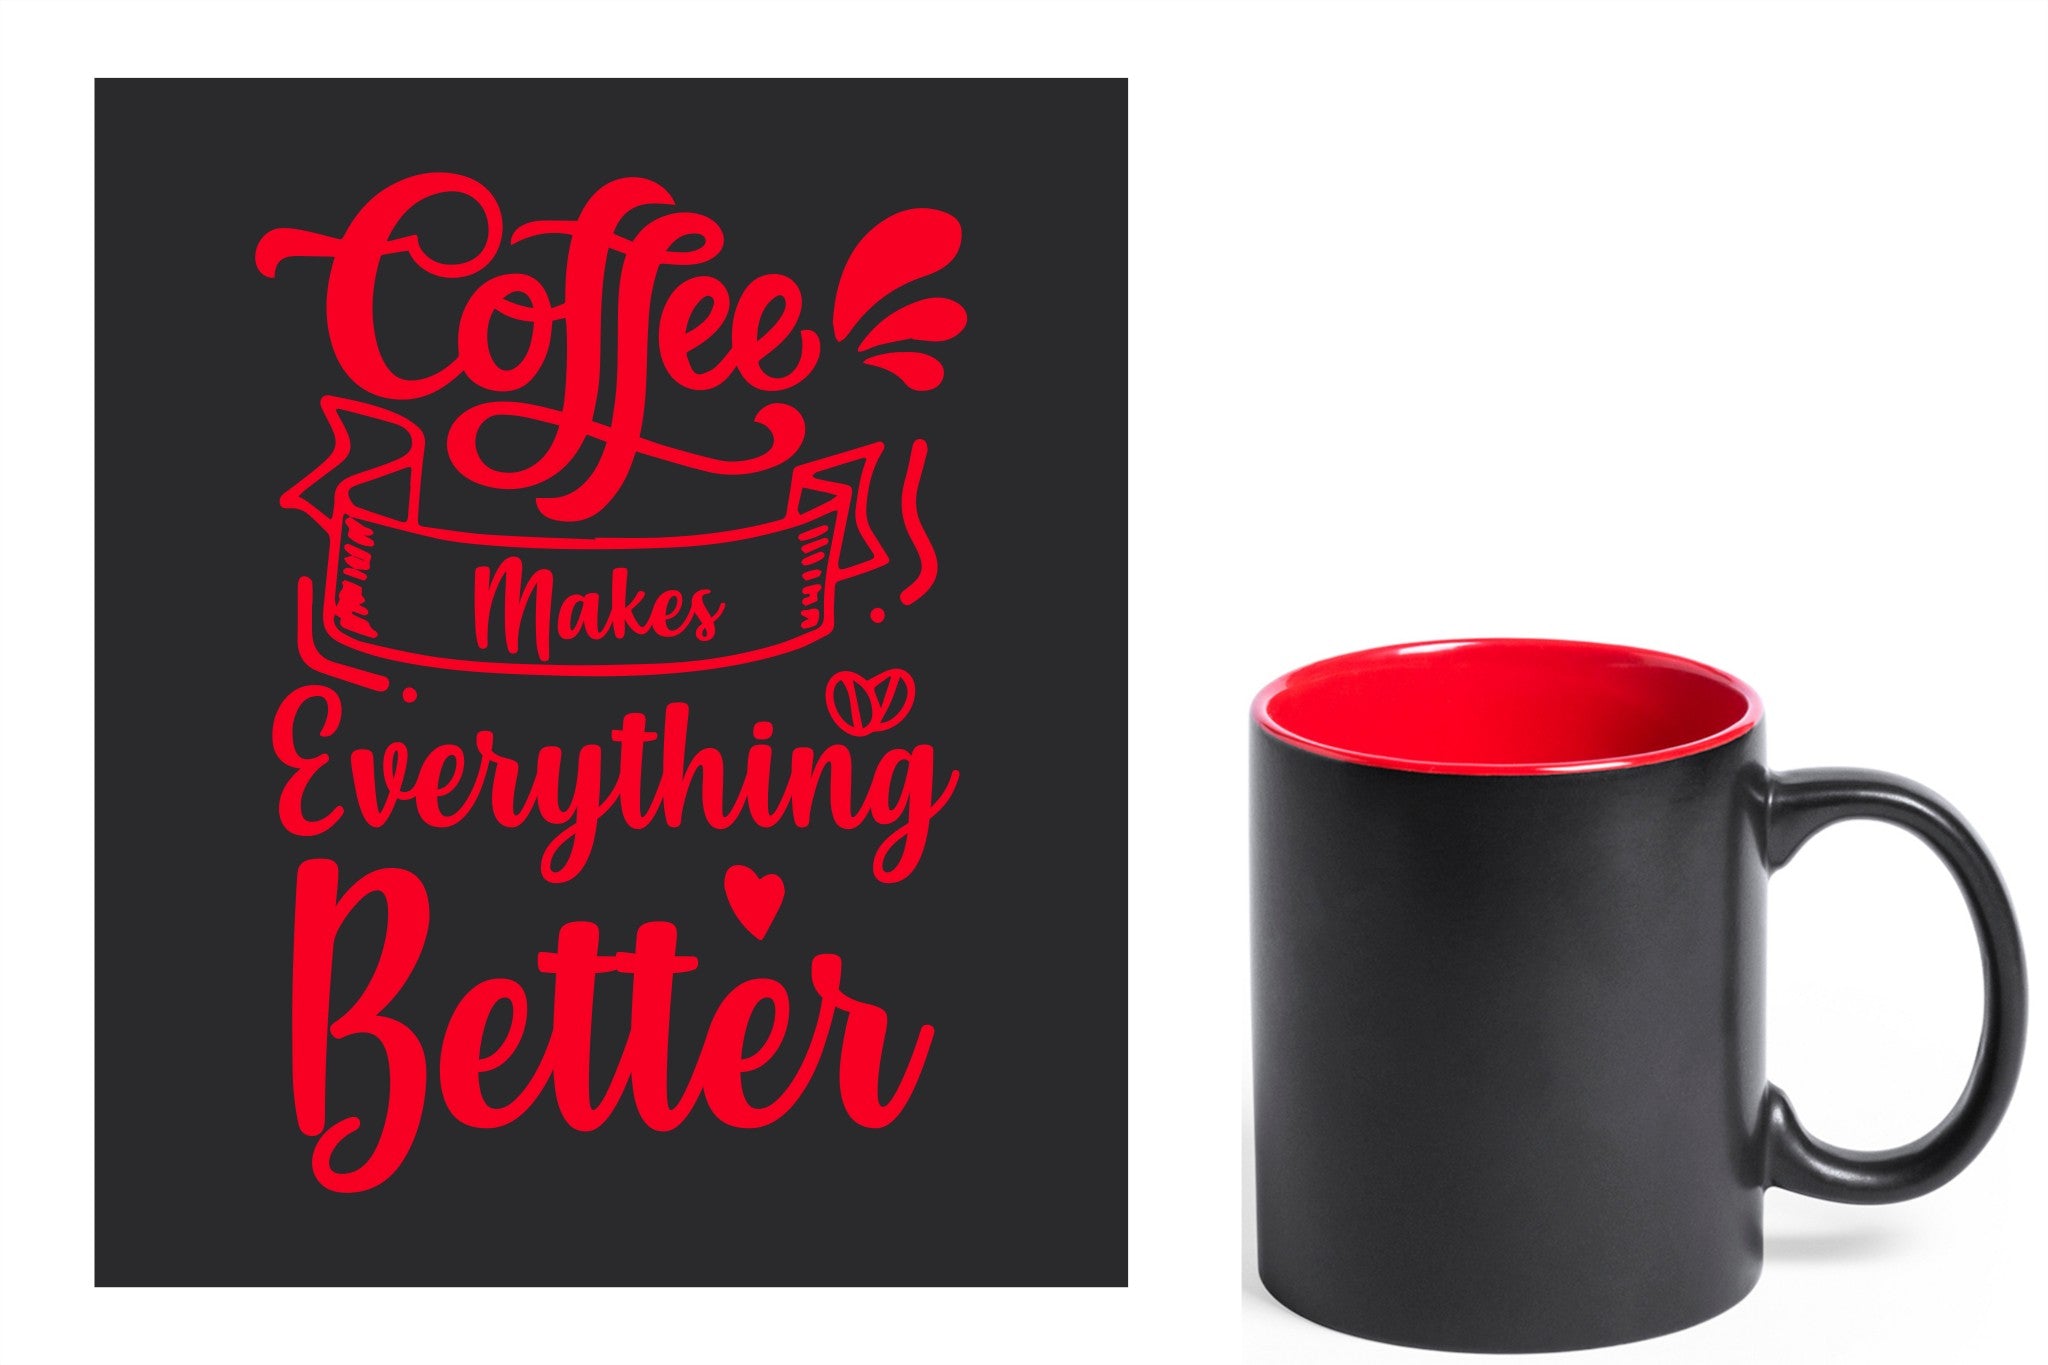 zwarte keramische mok met rode gravure  'Coffee makes everything better'.